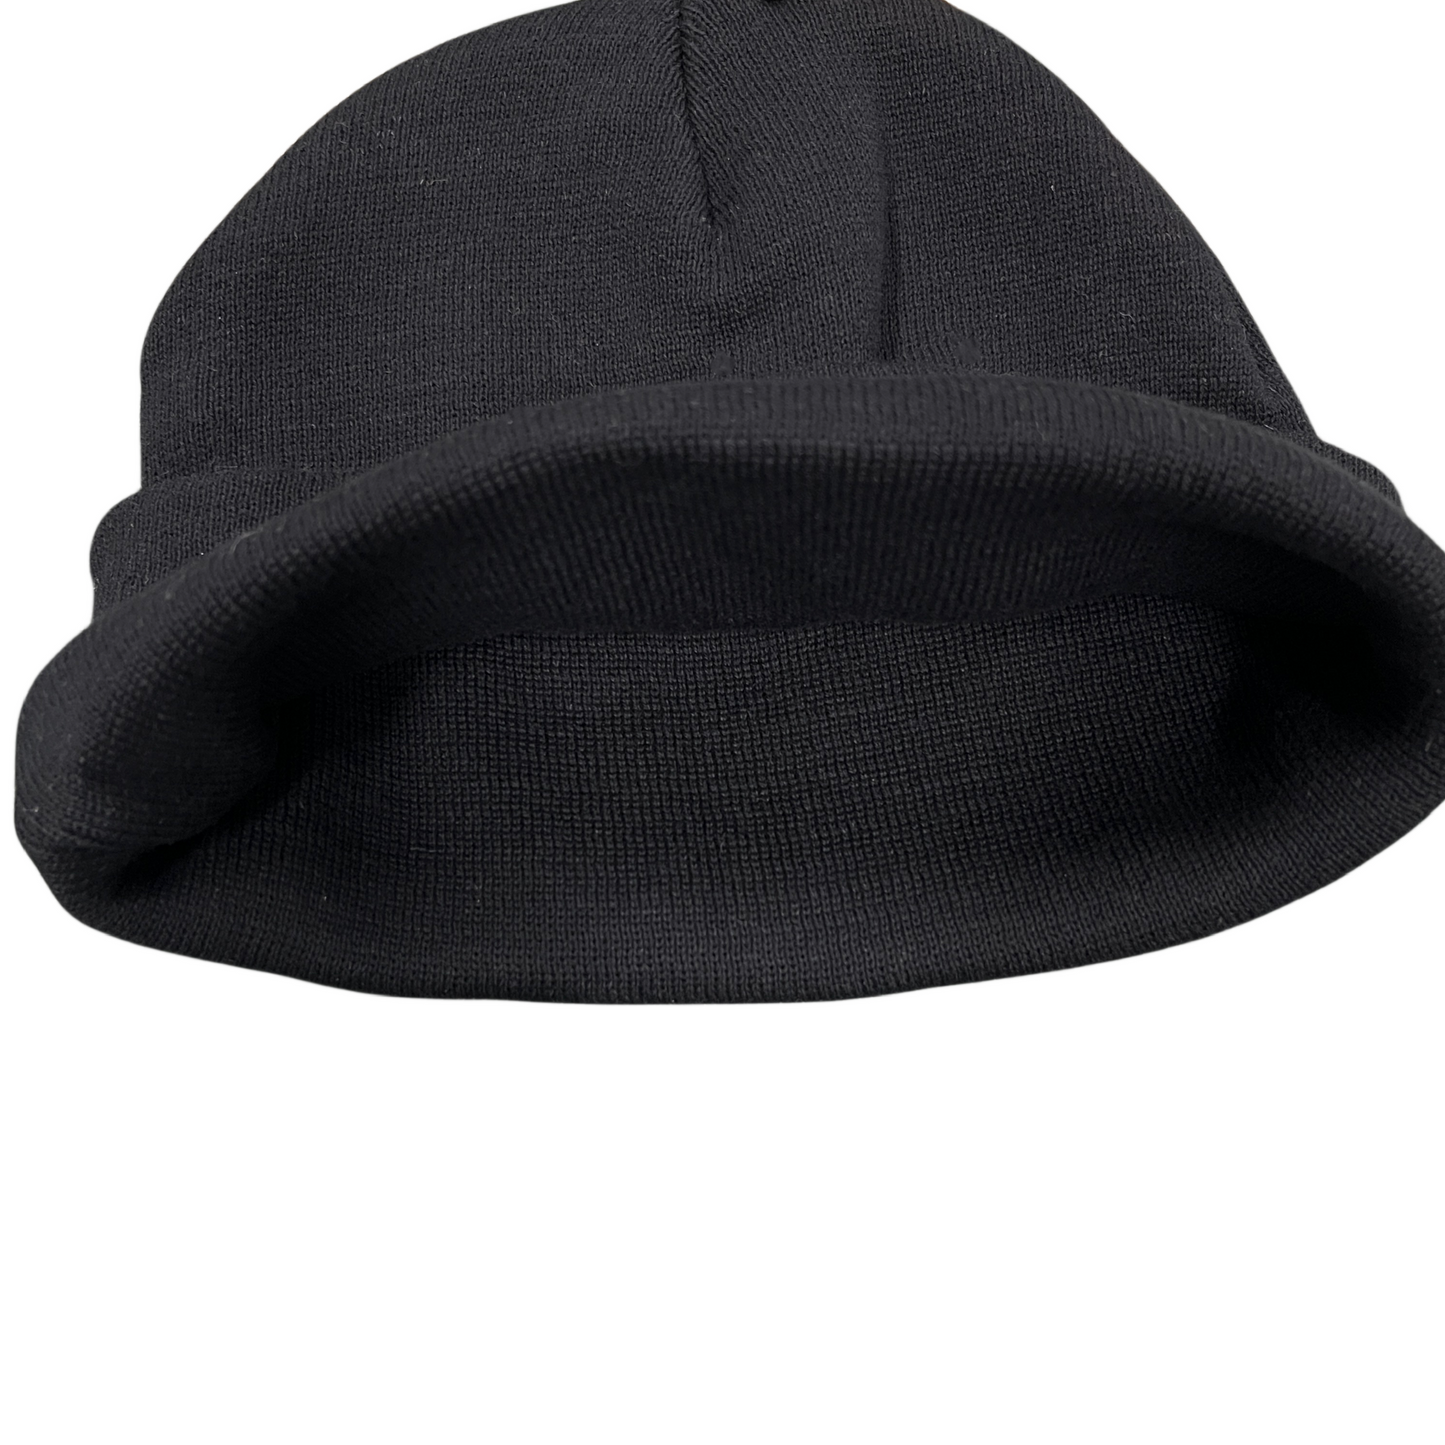 Corteiz Allstarz Folded Beanie Demon Embroidered Knitting Warm Cap Demon Printed Cold Hat - Black/White